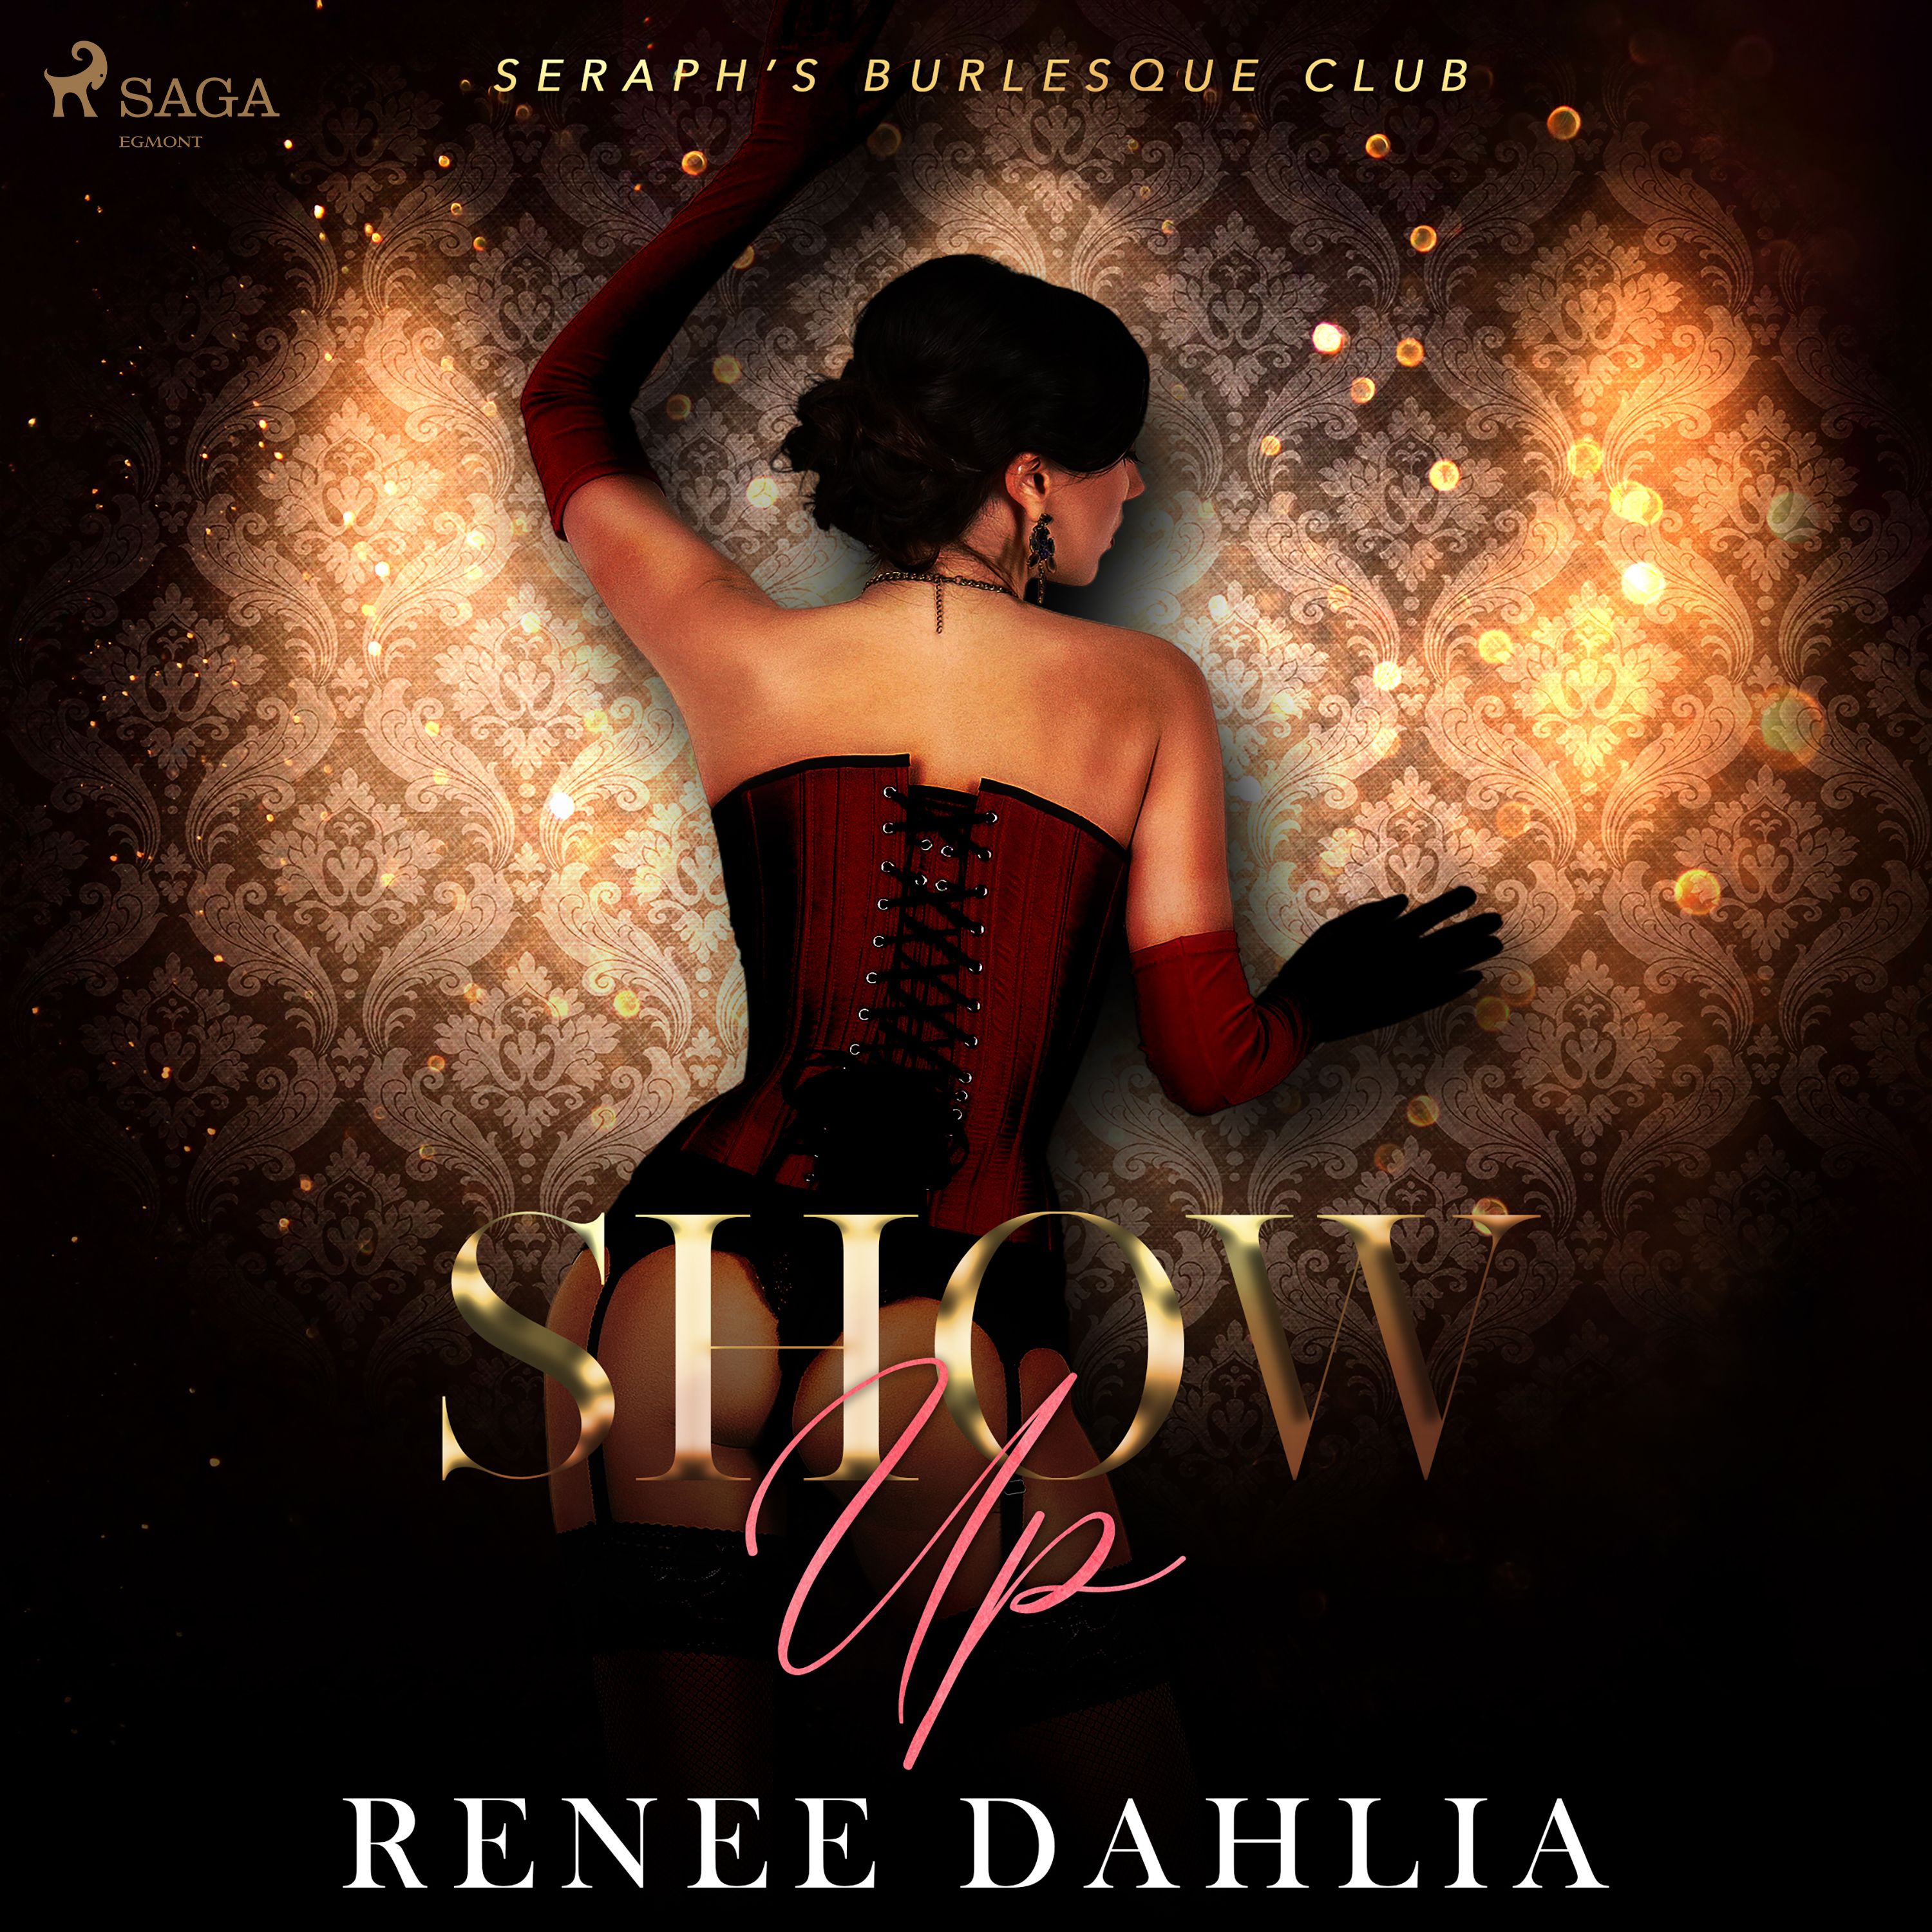 Show Up, ljudbok av Renee Dahlia